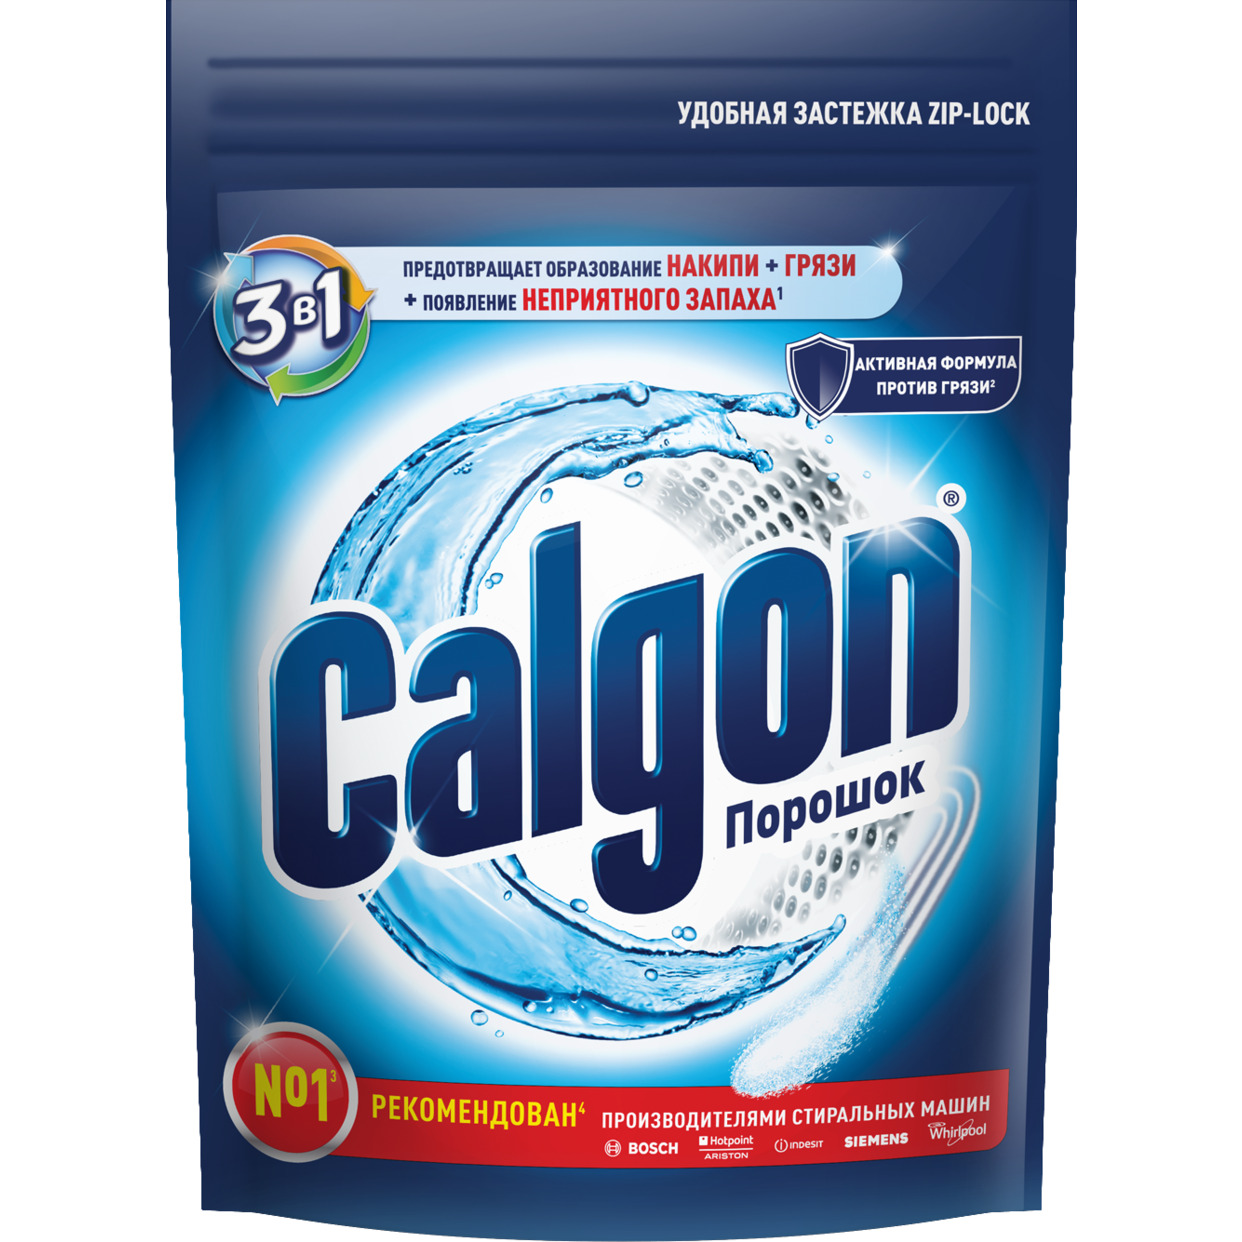 Средство для смягчения воды и предотвращения образования известкового налета Calgon 3в1, 400г по акции в Пятерочке